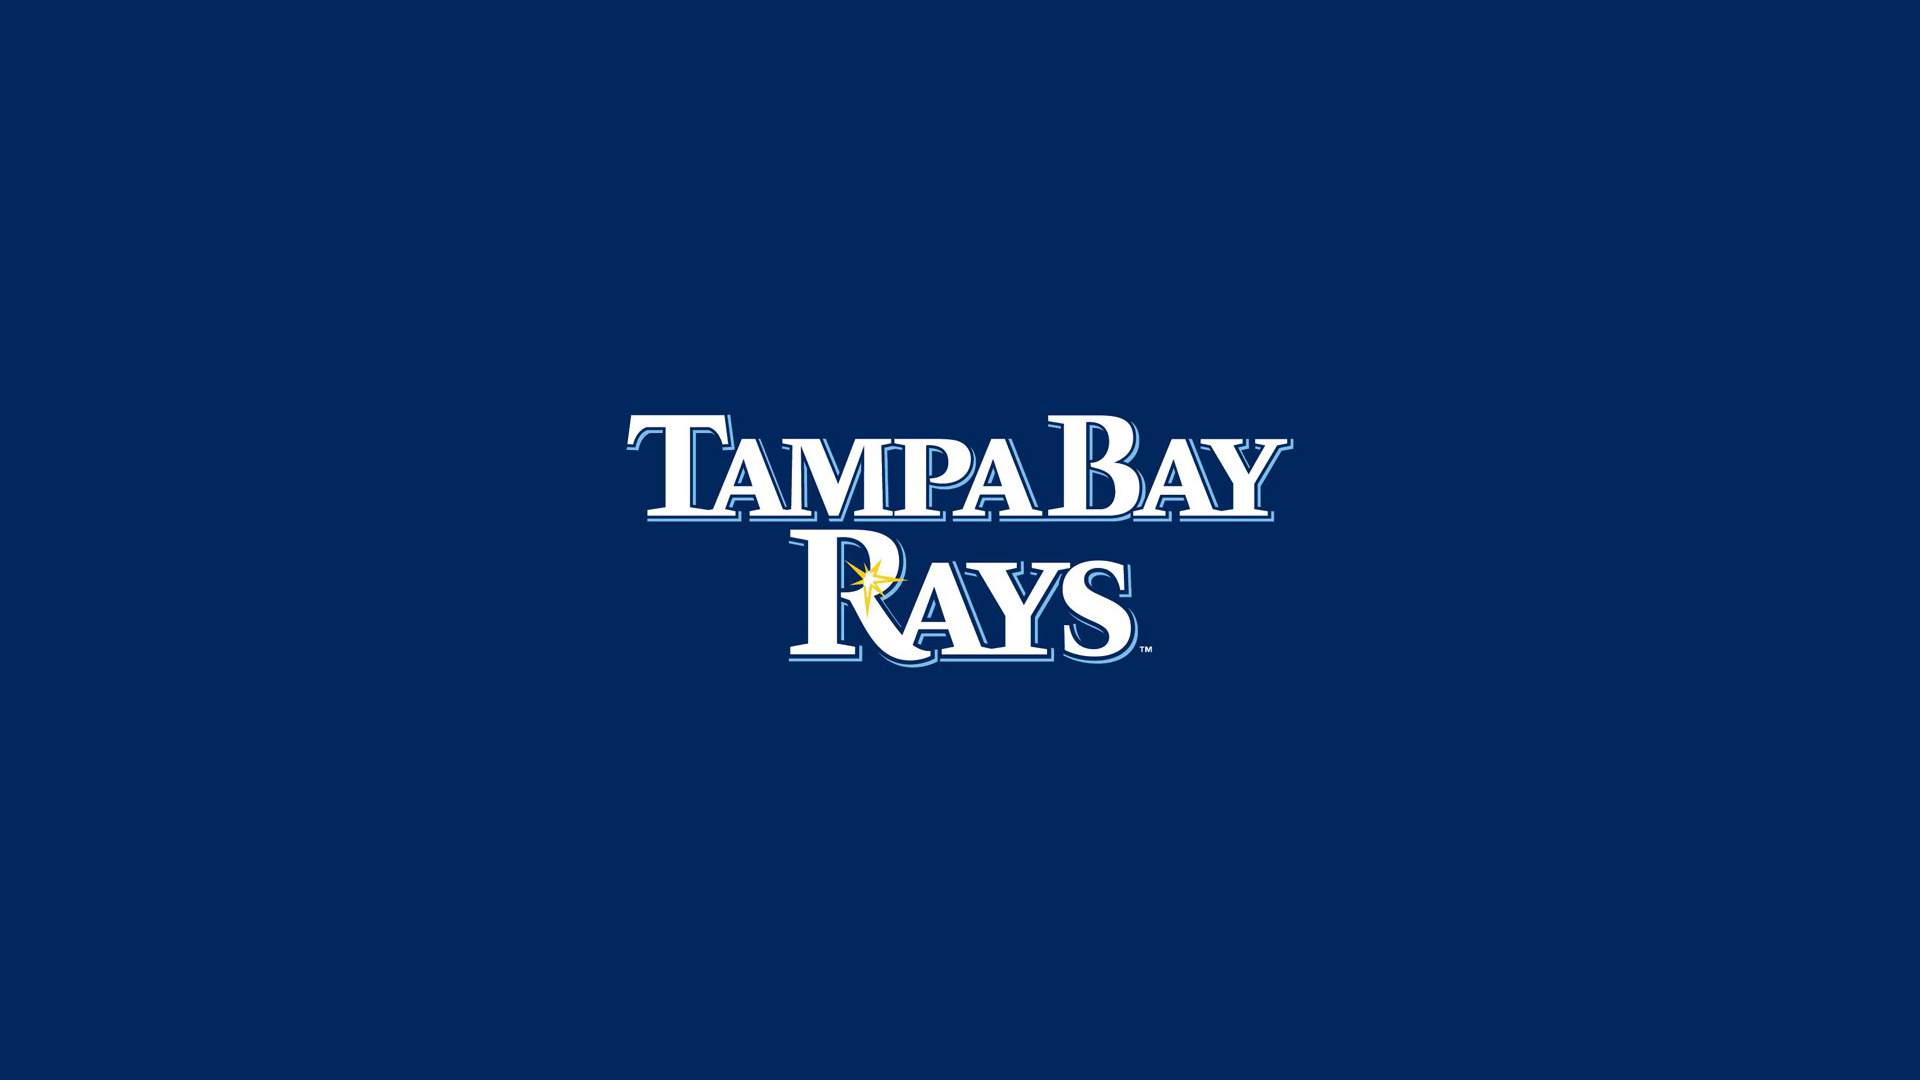 Tampa Bay Rays, MLB baseball, Hi-res wallpaper, Tampa pride, 1920x1080 Full HD Desktop